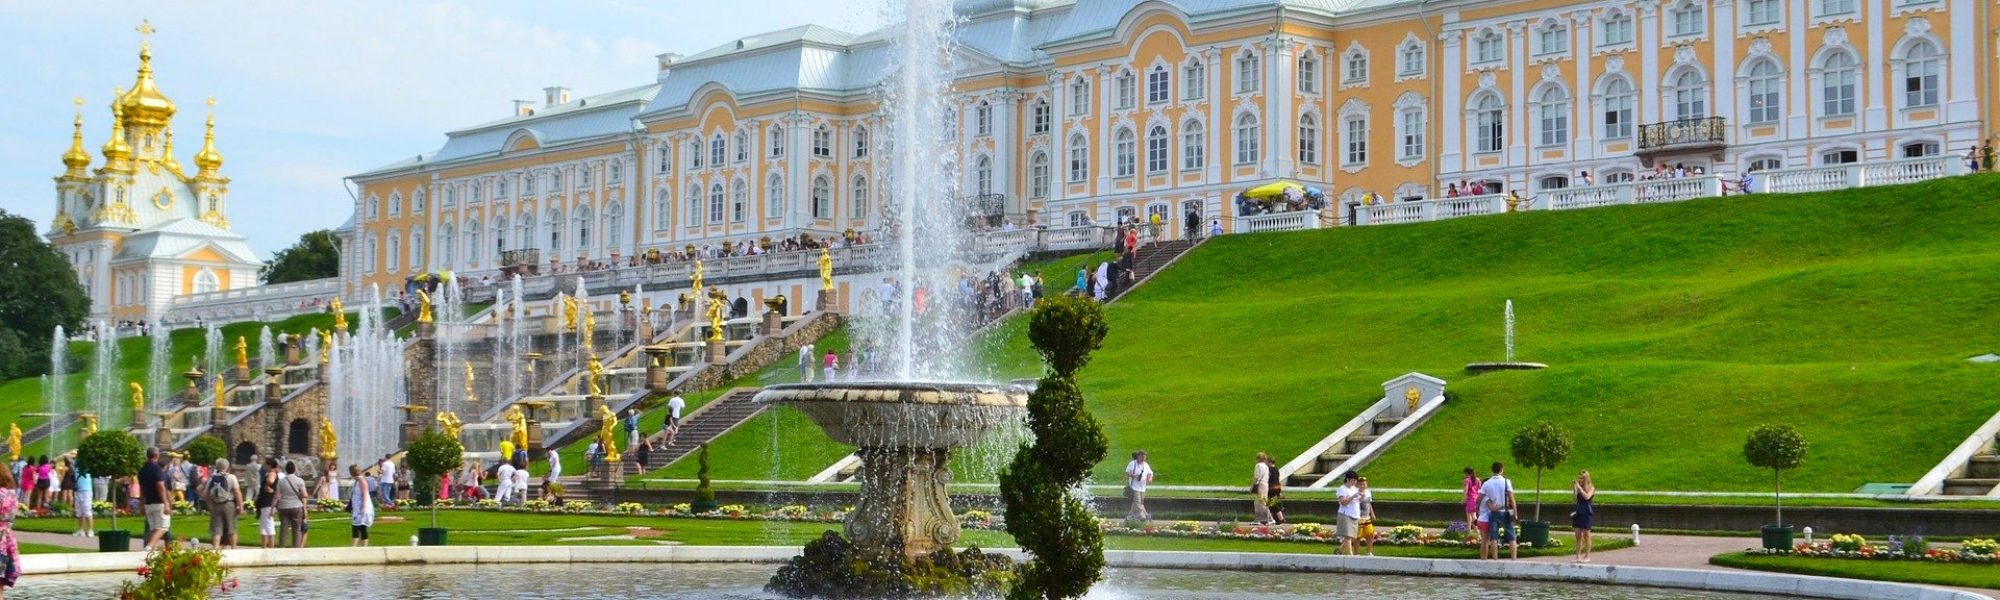 Le grand palais de Peterhof